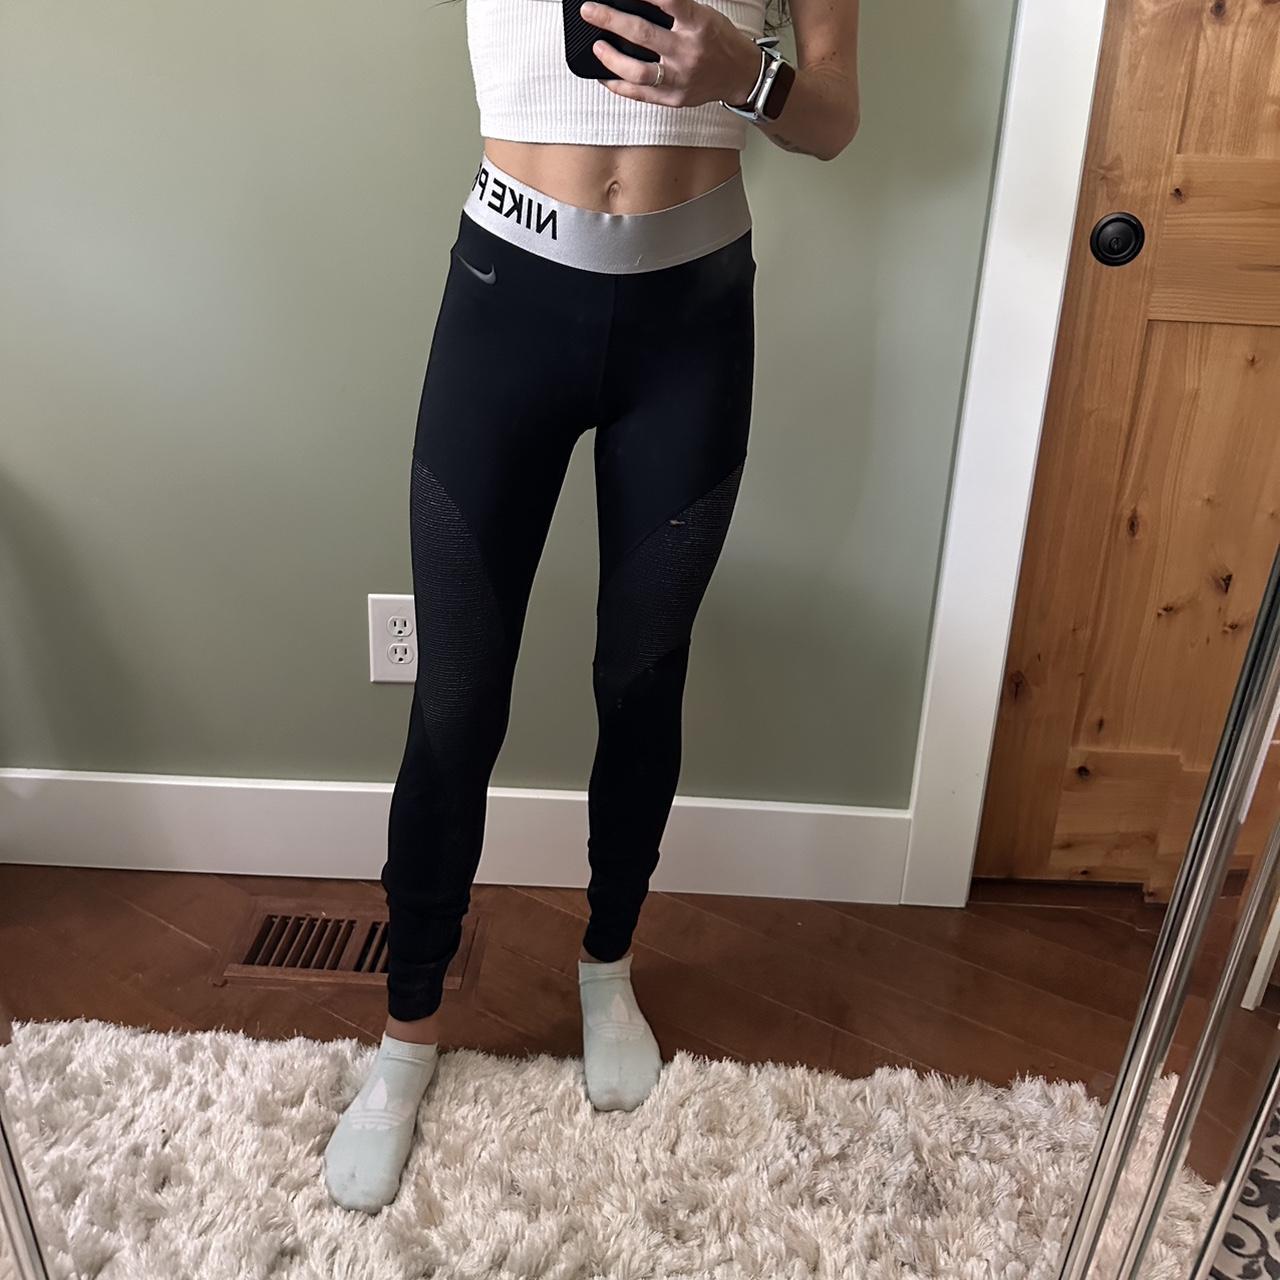 Nike Dri-fit leggings in Black